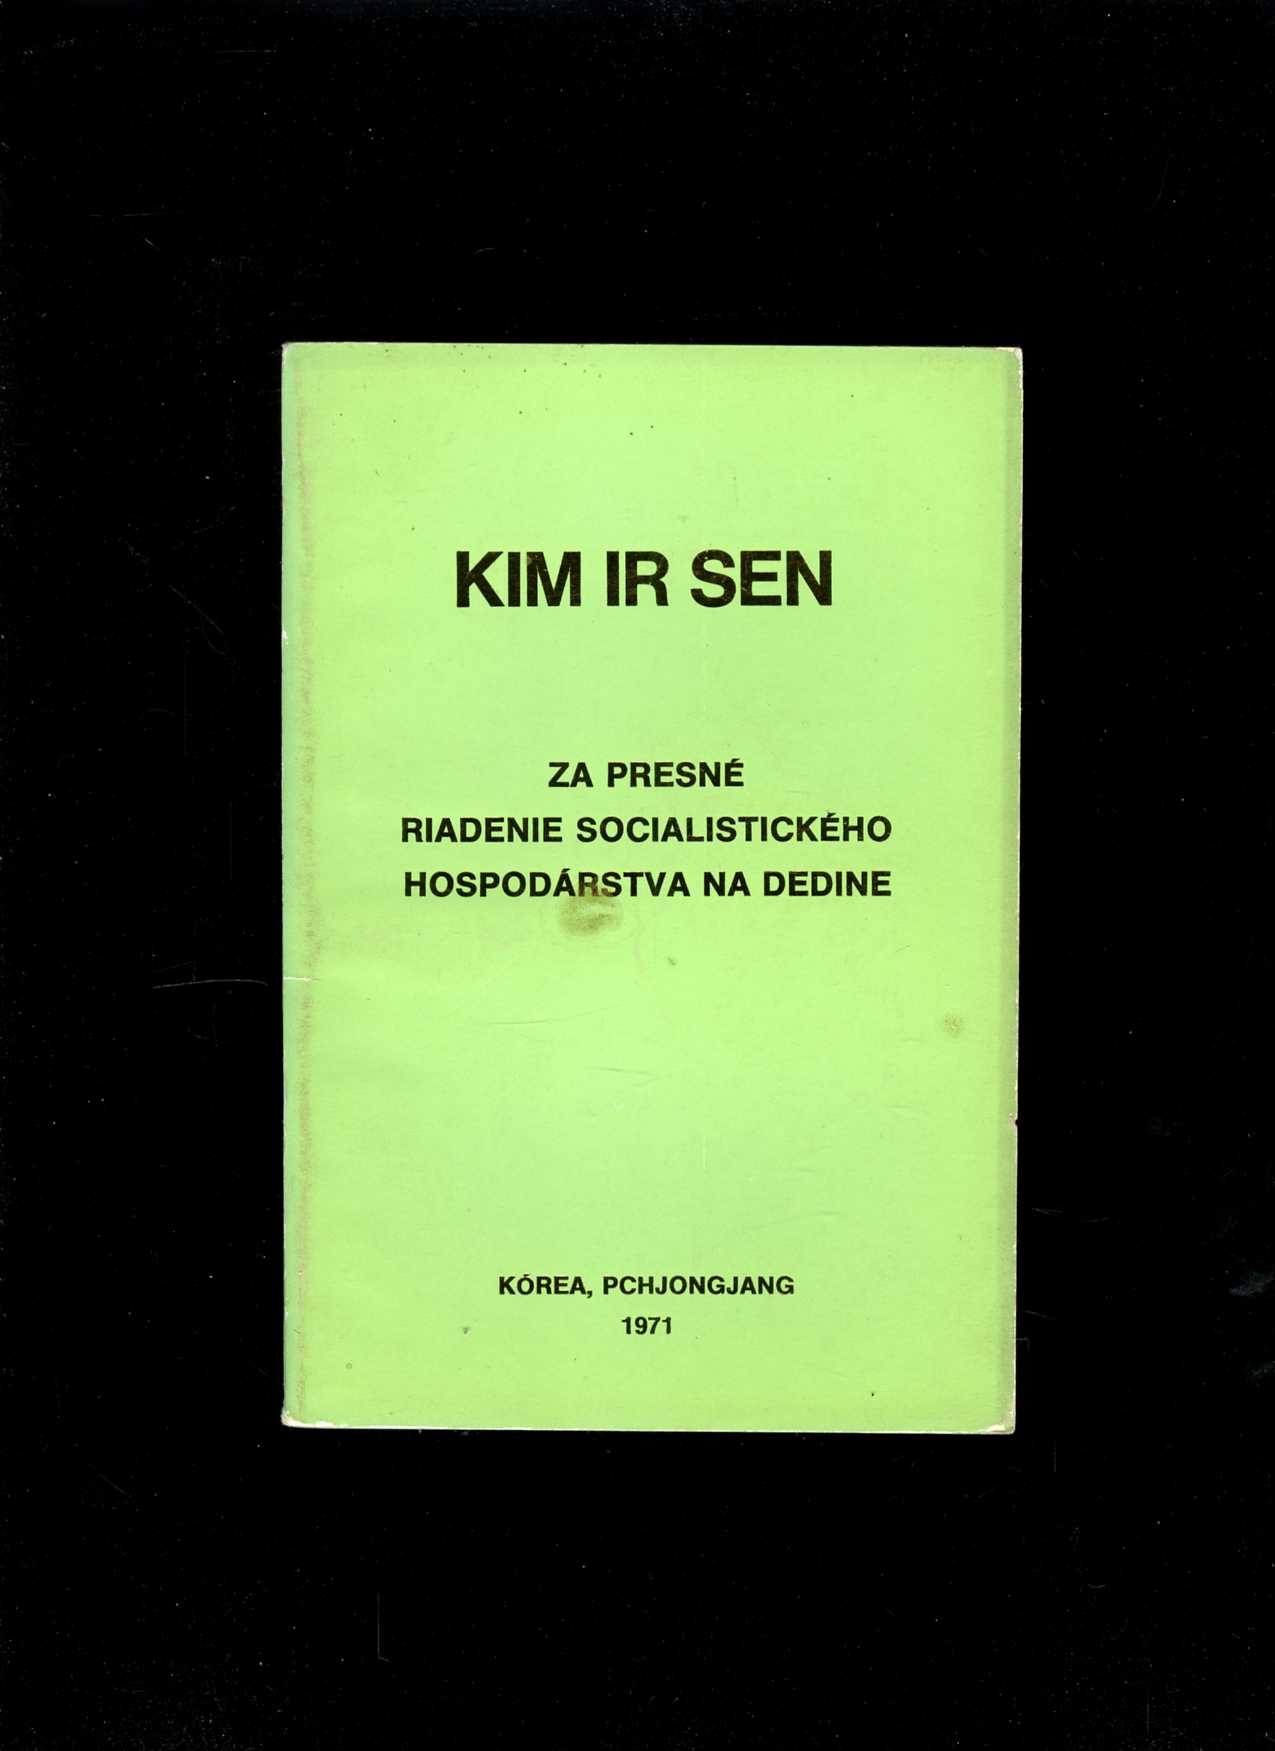 Za presné riadenie socialistického hospodárstva na dedine (Kim Ir Sen)